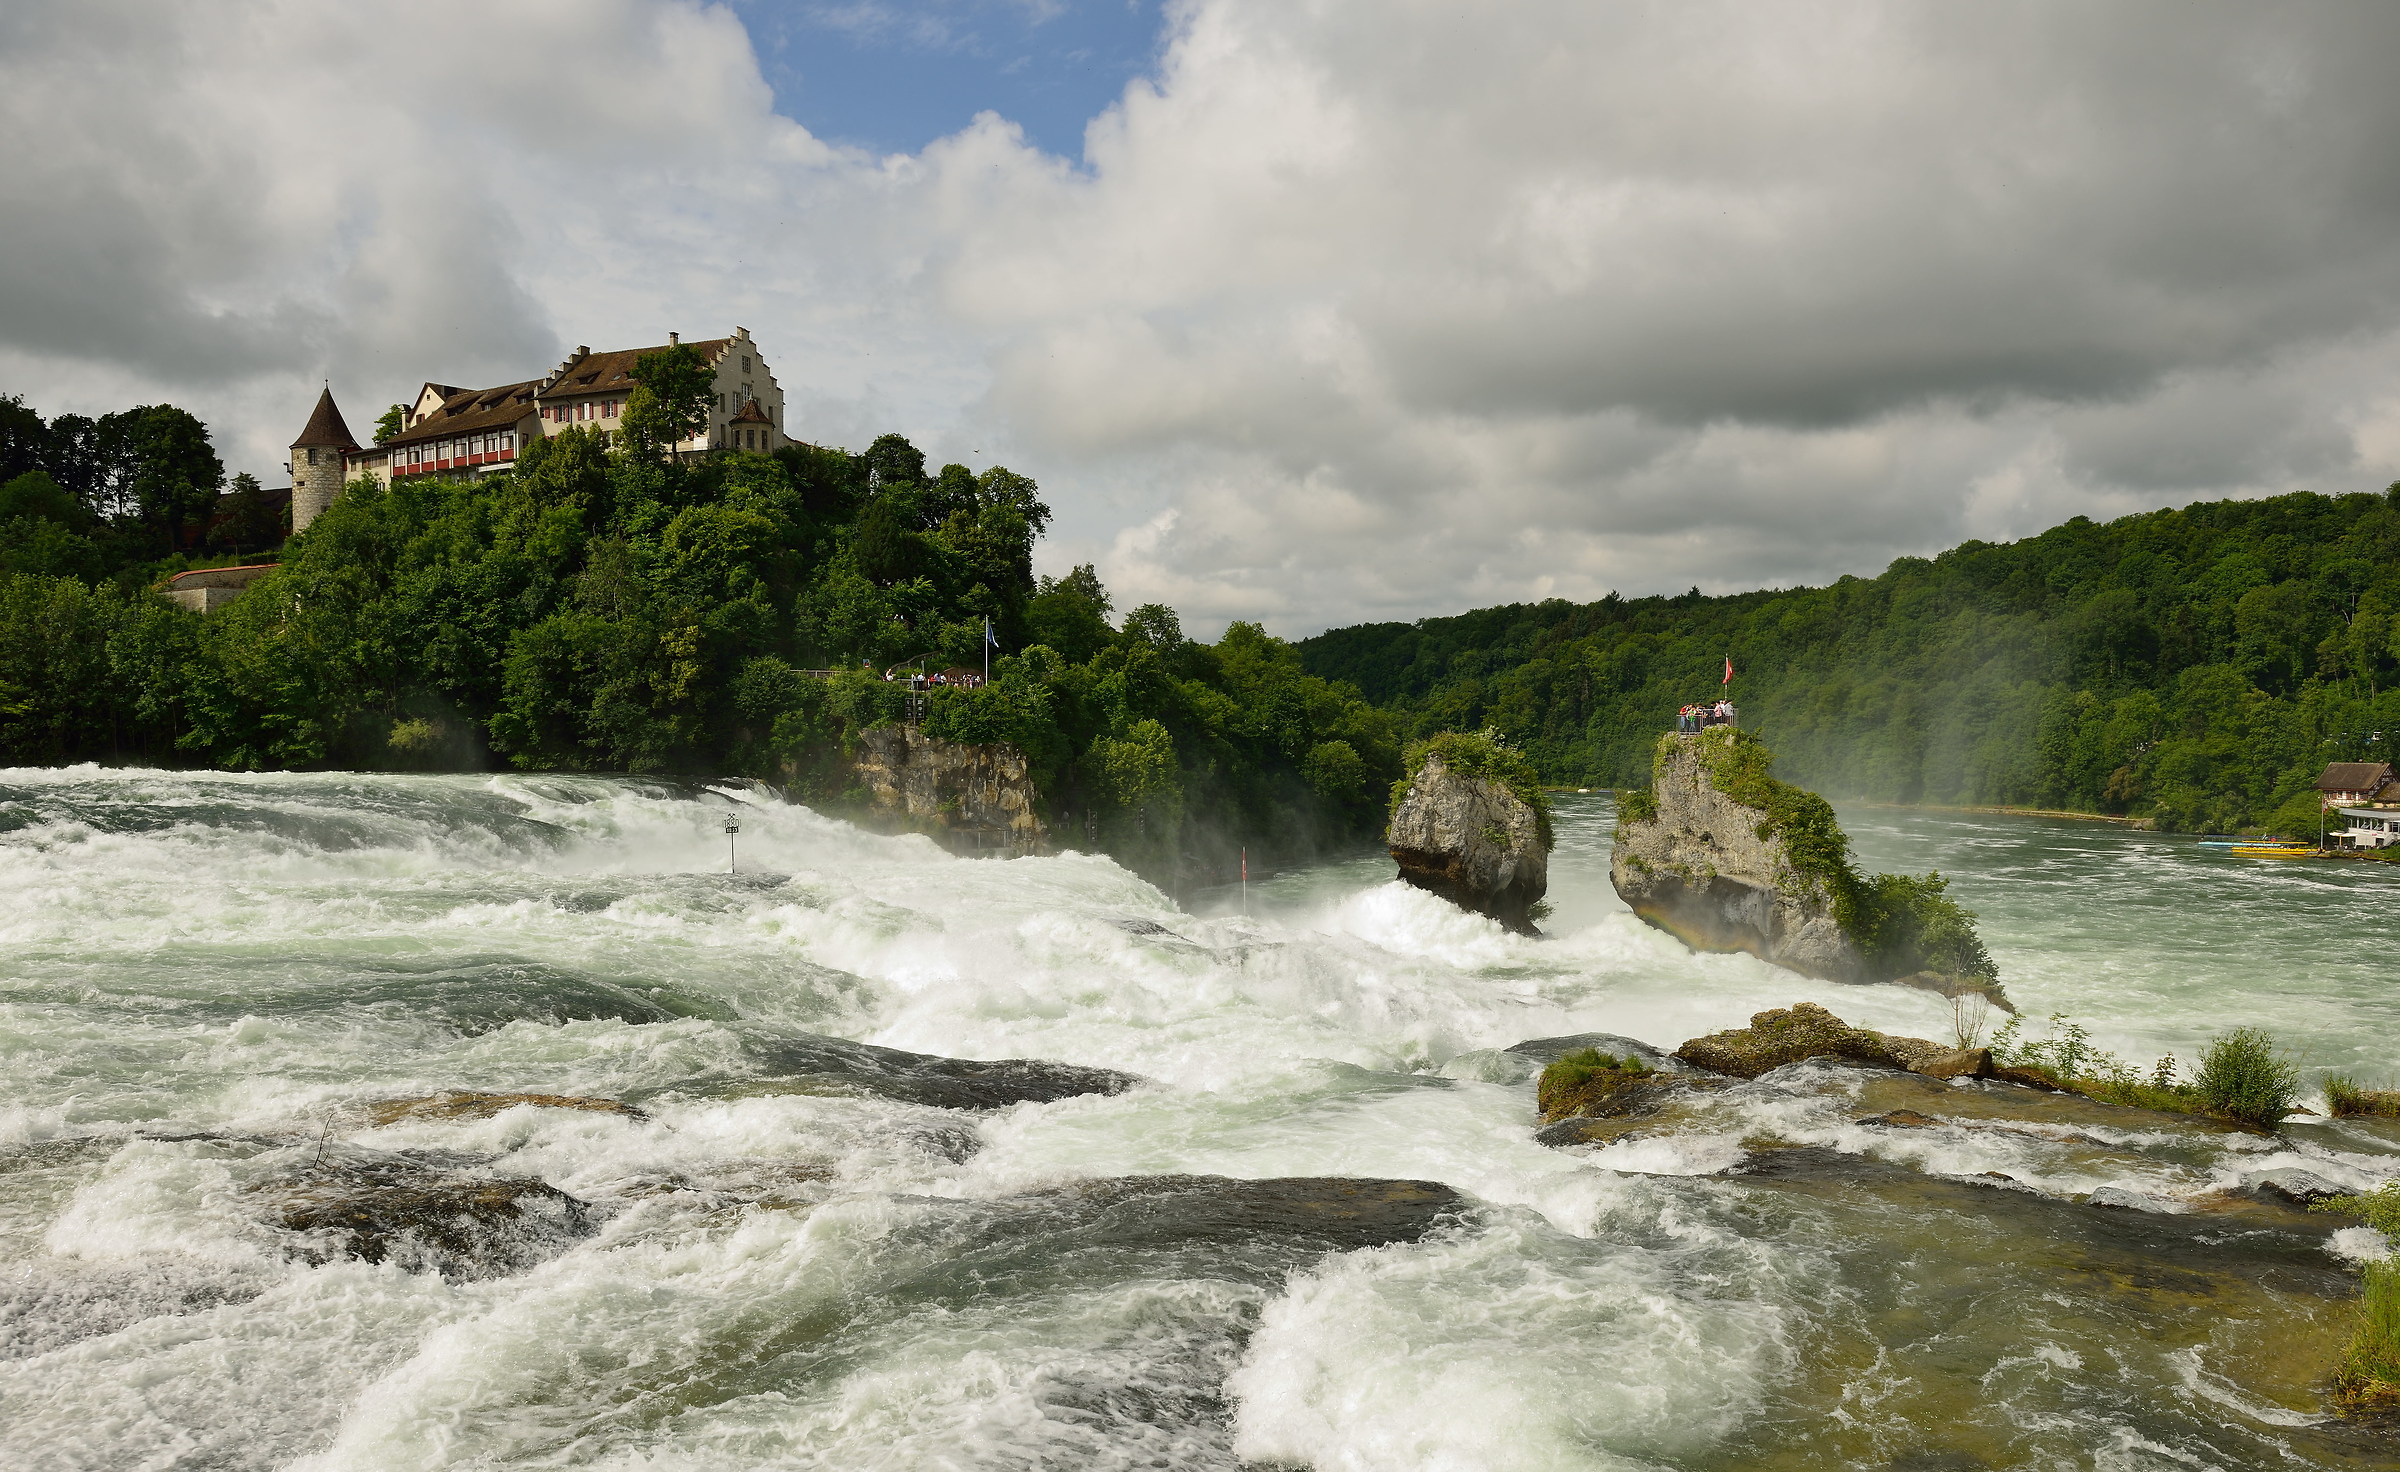 Rheinfall (Rhine Falls)...